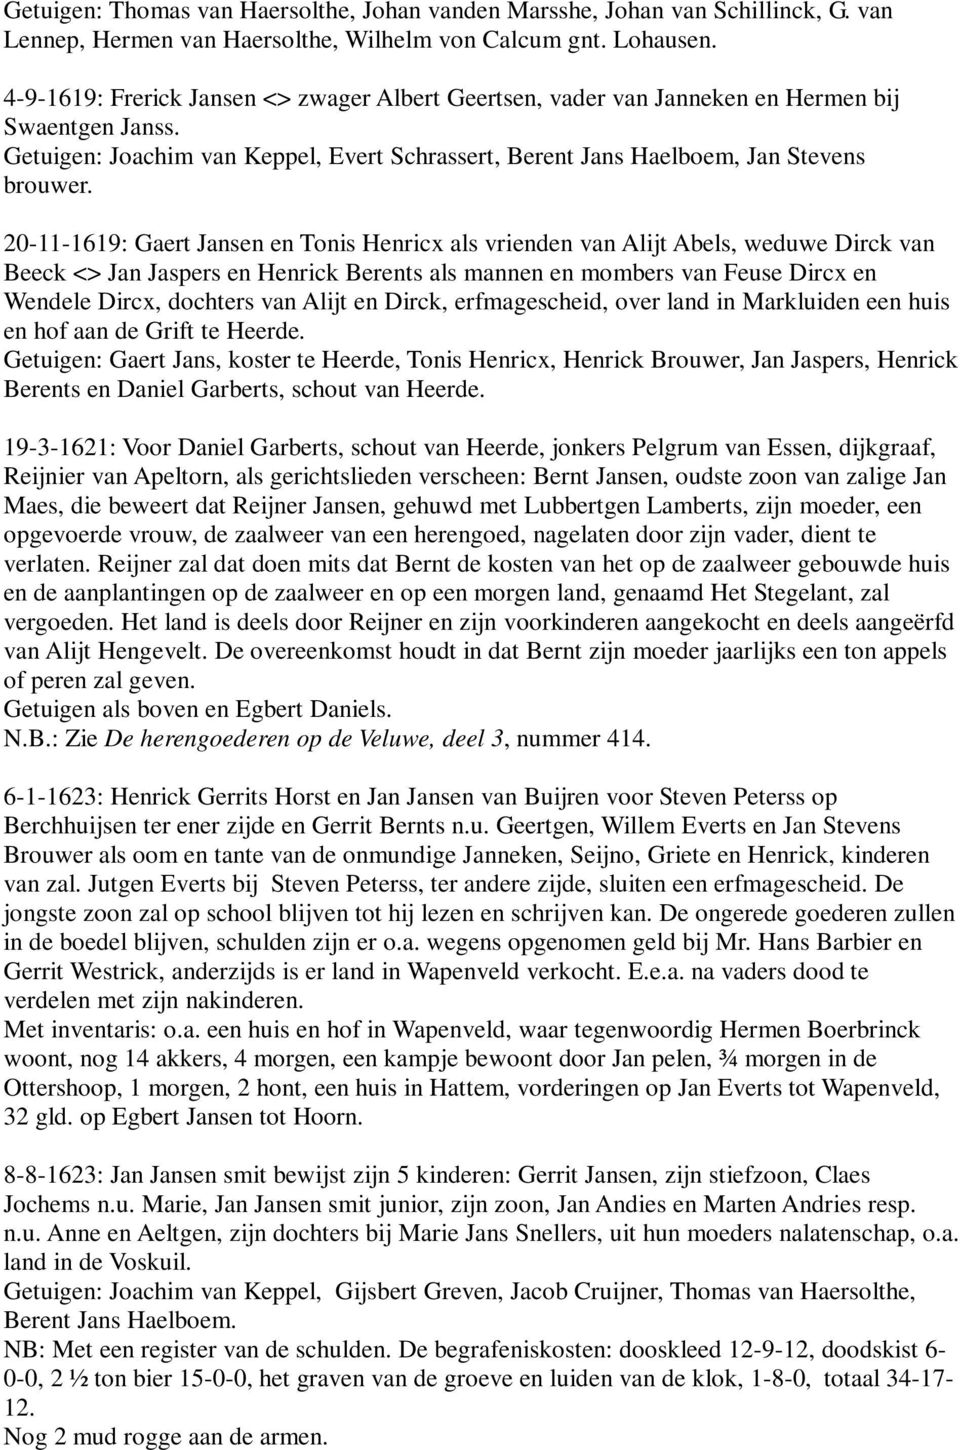 20-11-1619: Gaert Jansen en Tonis Henricx als vrienden van Alijt Abels, weduwe Dirck van Beeck <> Jan Jaspers en Henrick Berents als mannen en mombers van Feuse Dircx en Wendele Dircx, dochters van